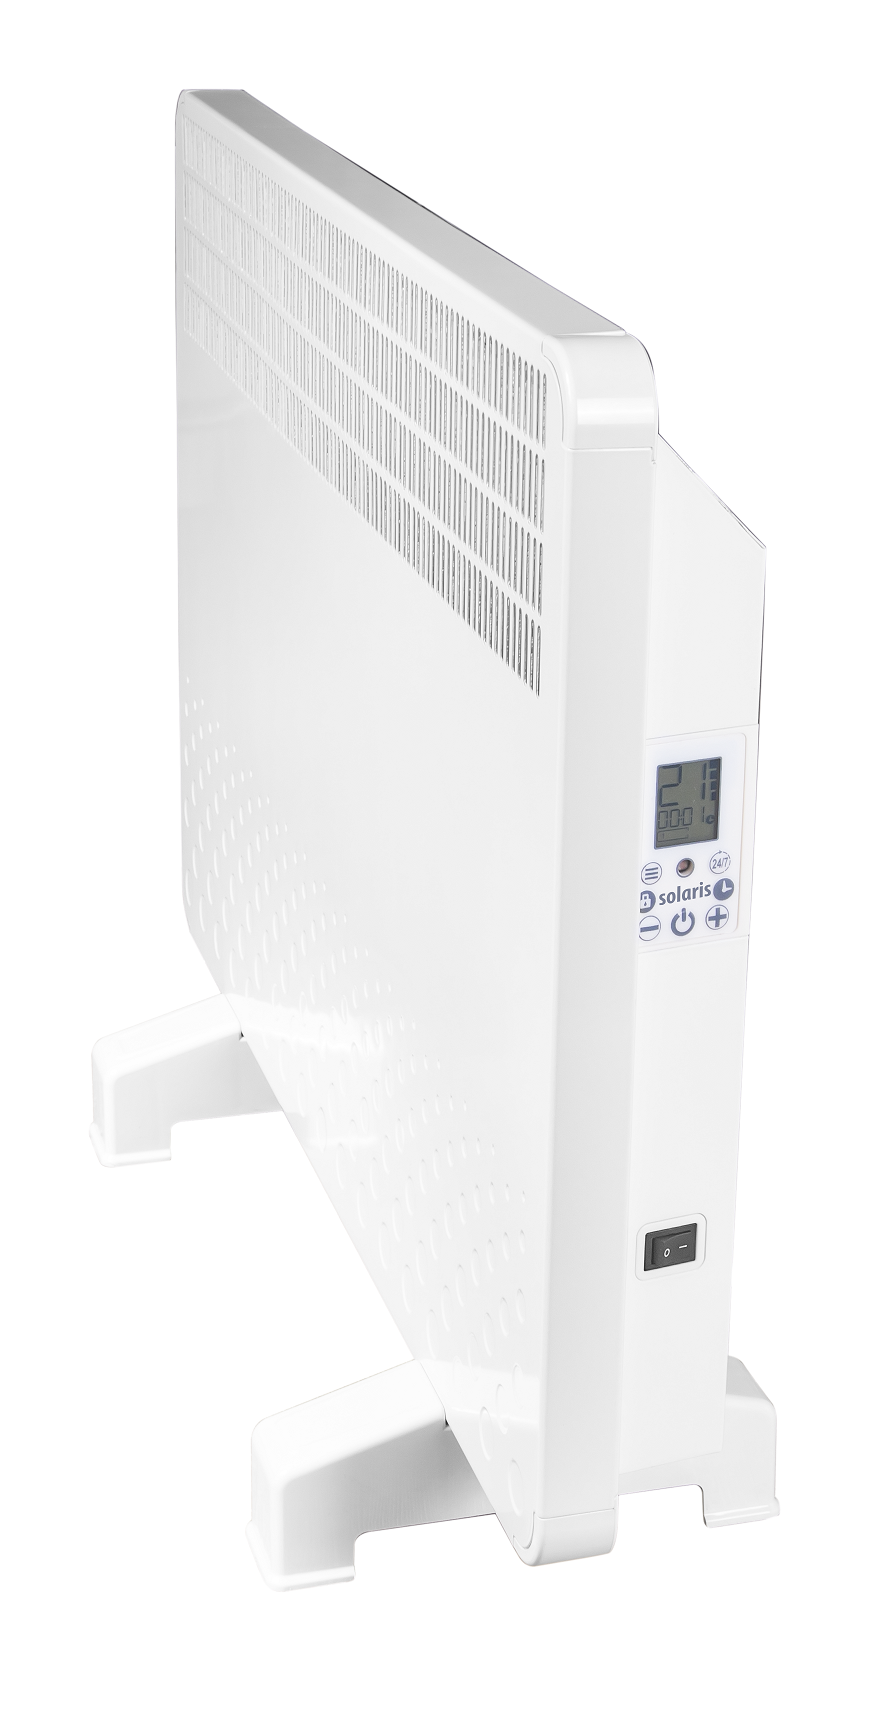 Convector electric de perete sau pardoseala Solaris KIP 2000 W, control electronic, Termostat de siguranta, termostat reglabil, IP 24, ERP 2018, pentru 24 mp 2000